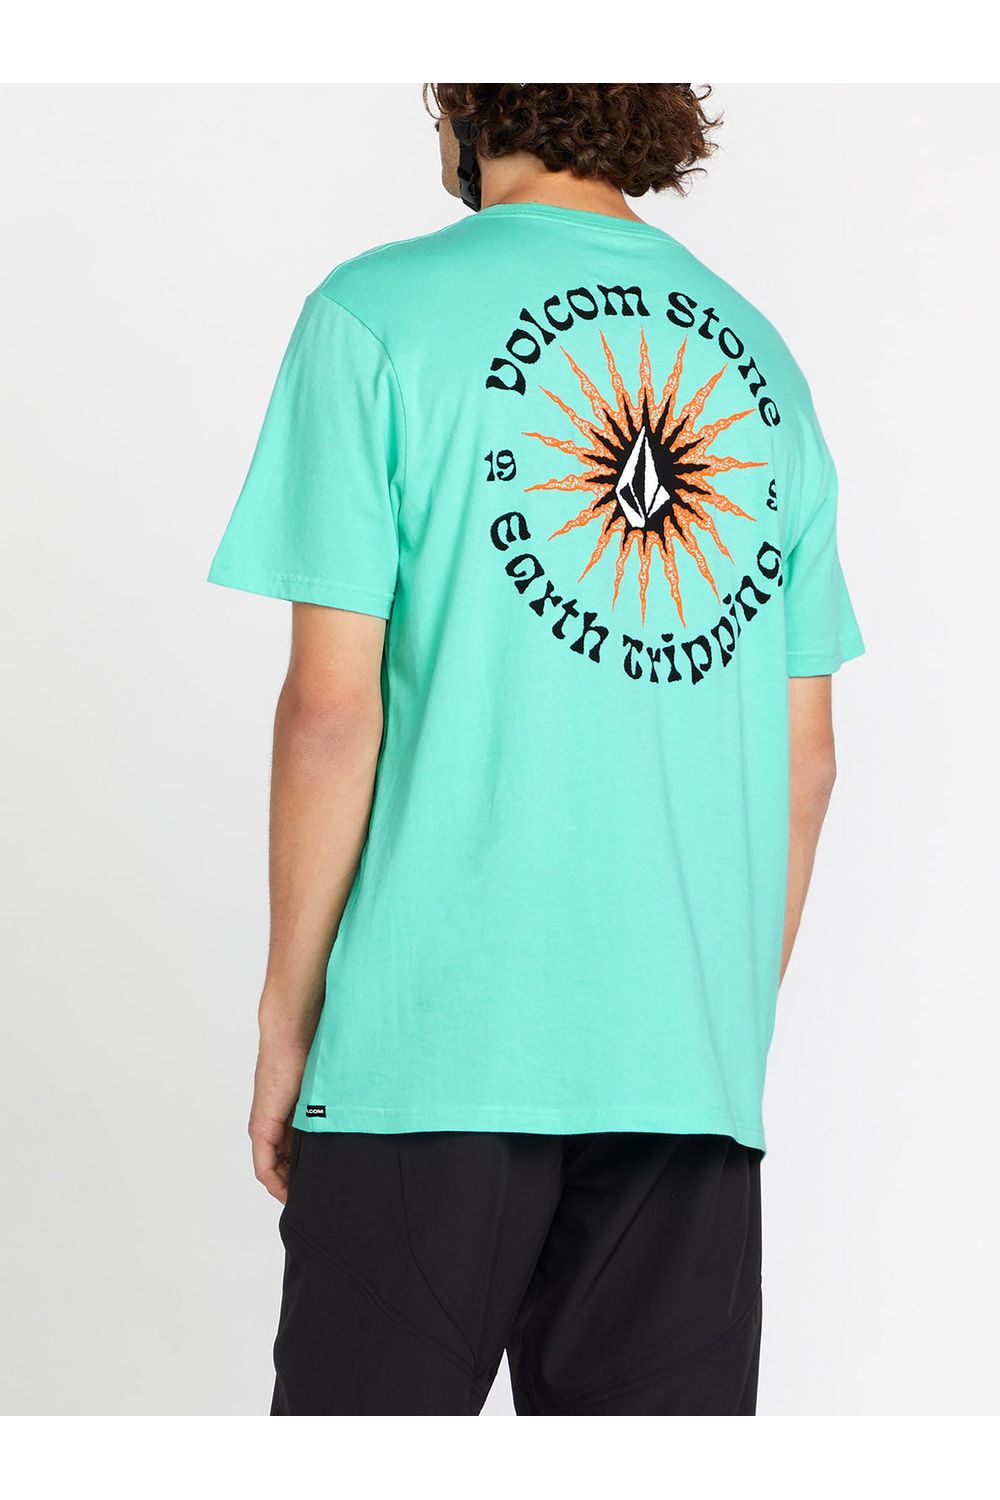 Volcom Scorcho Fty Short Sleeve T-Shirt Dusty Aqua